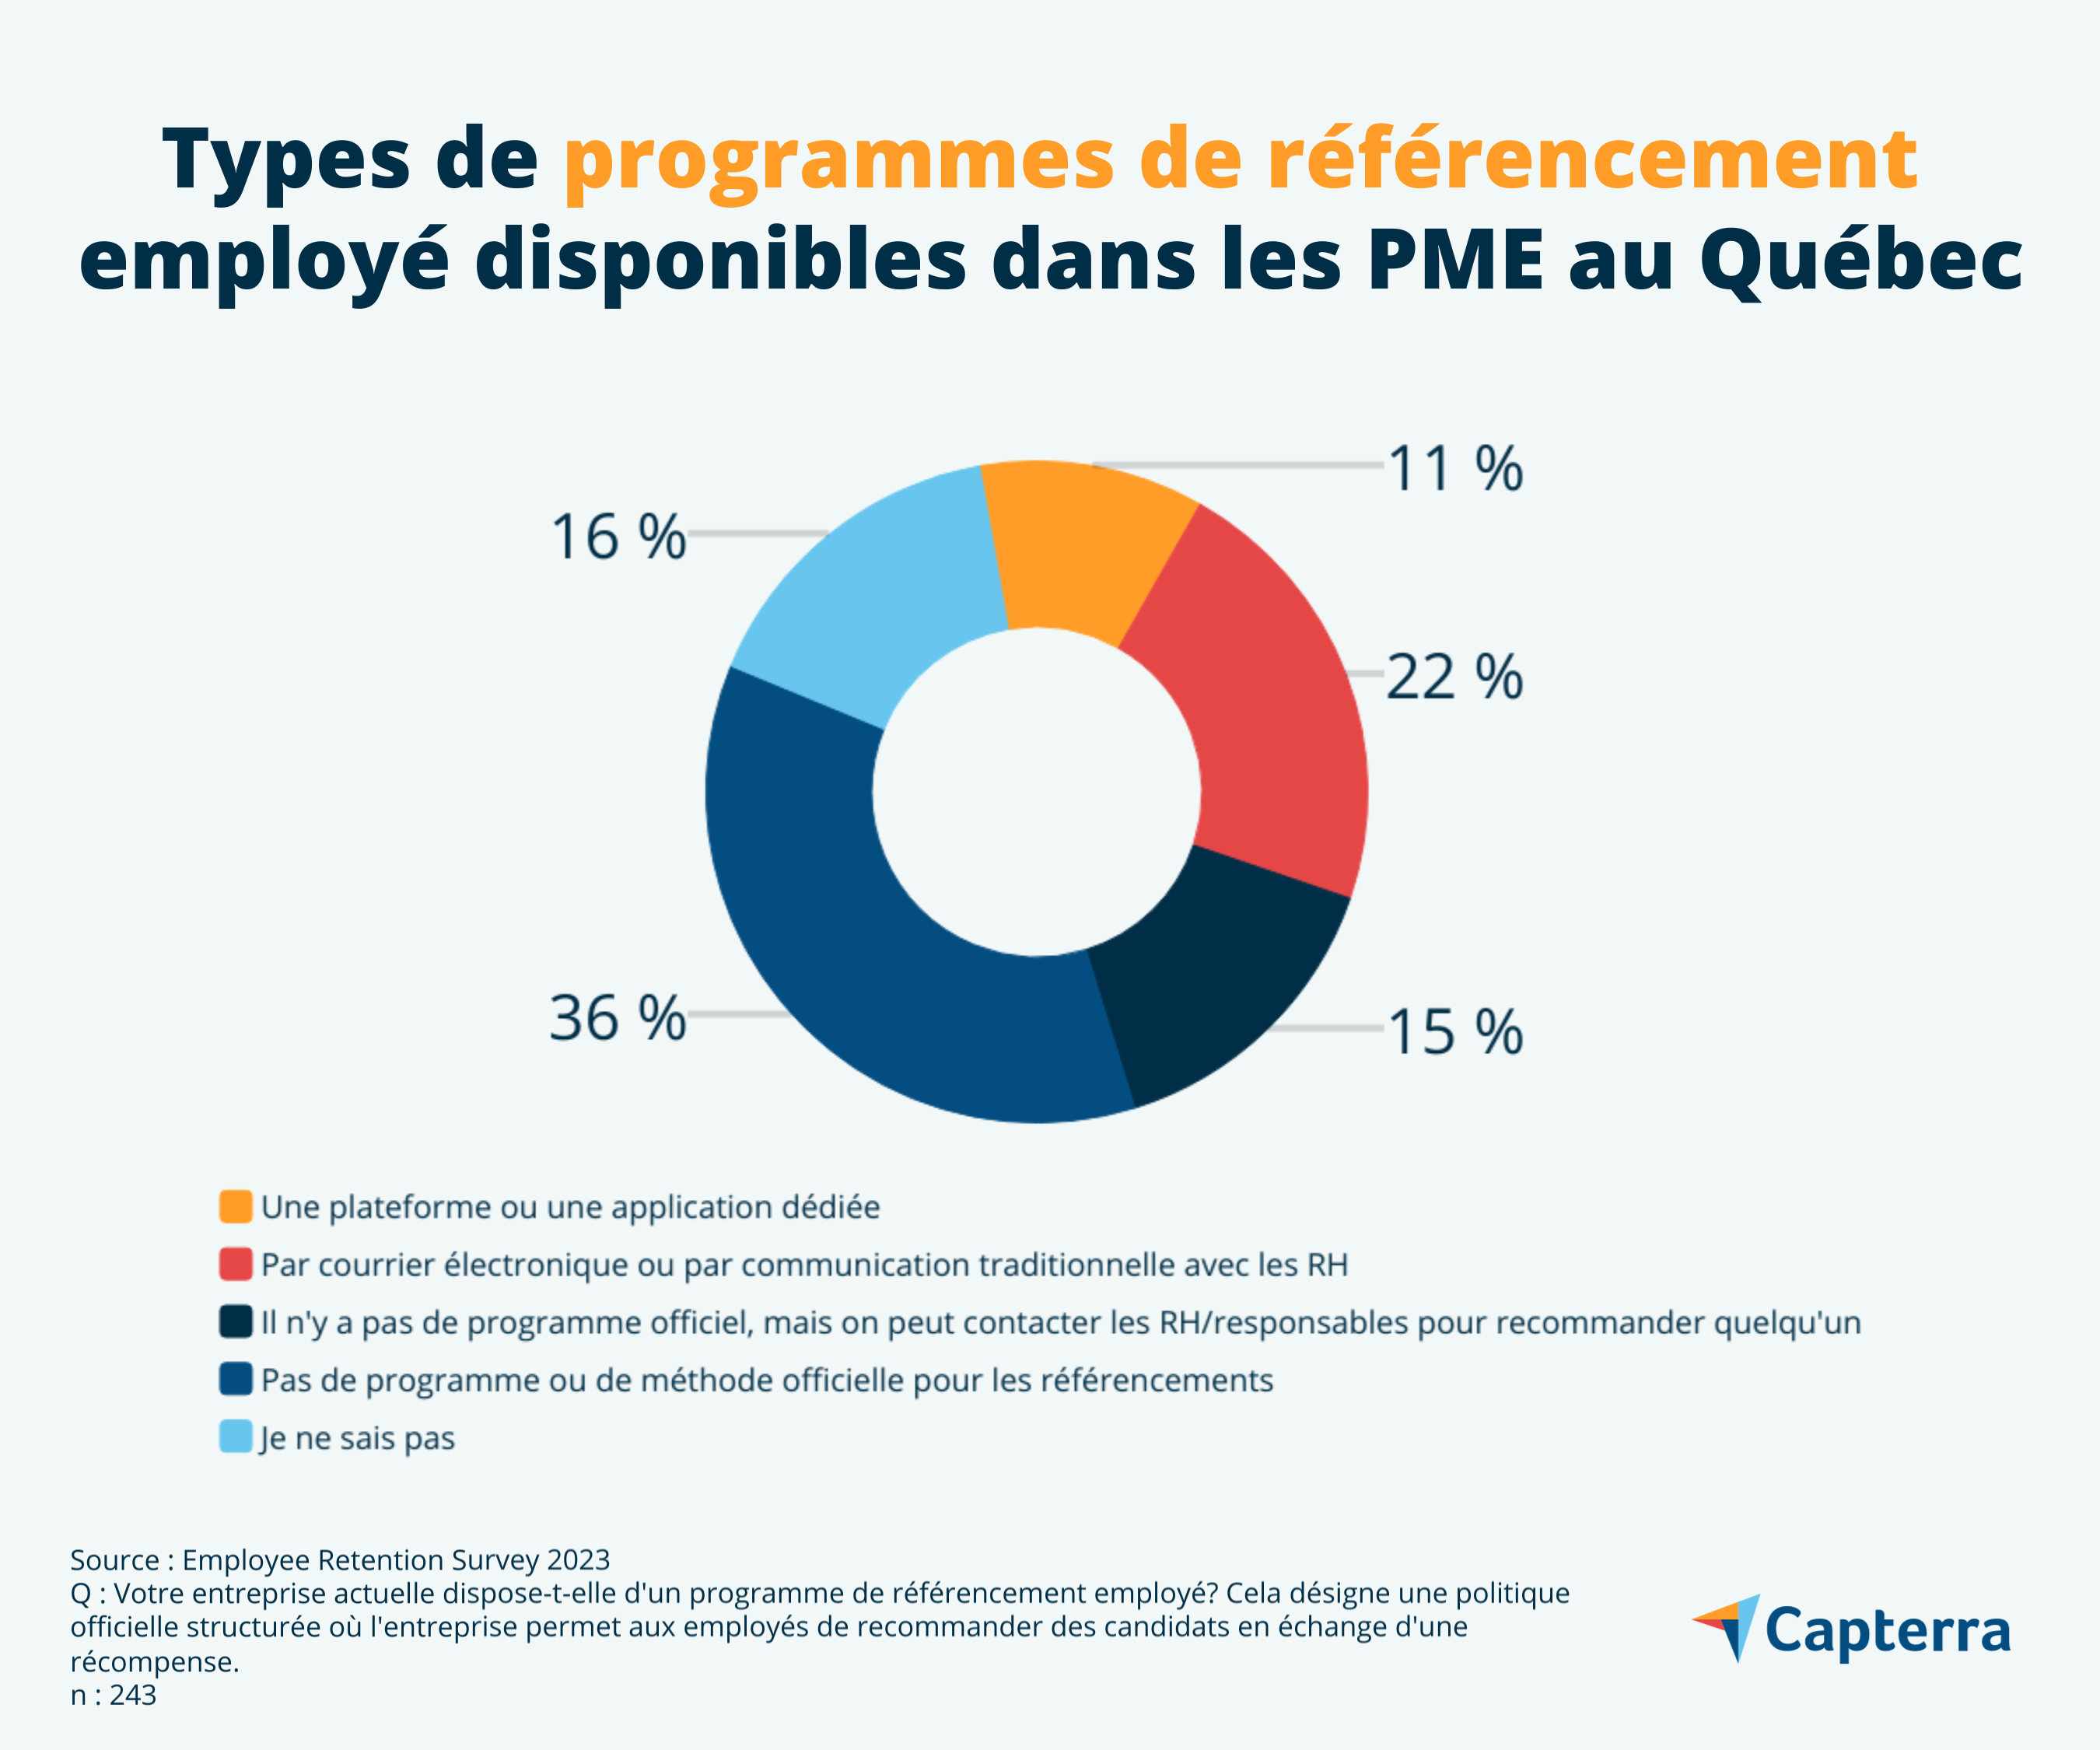 Présence de programmes de référencement employé au sein des PME québécoises